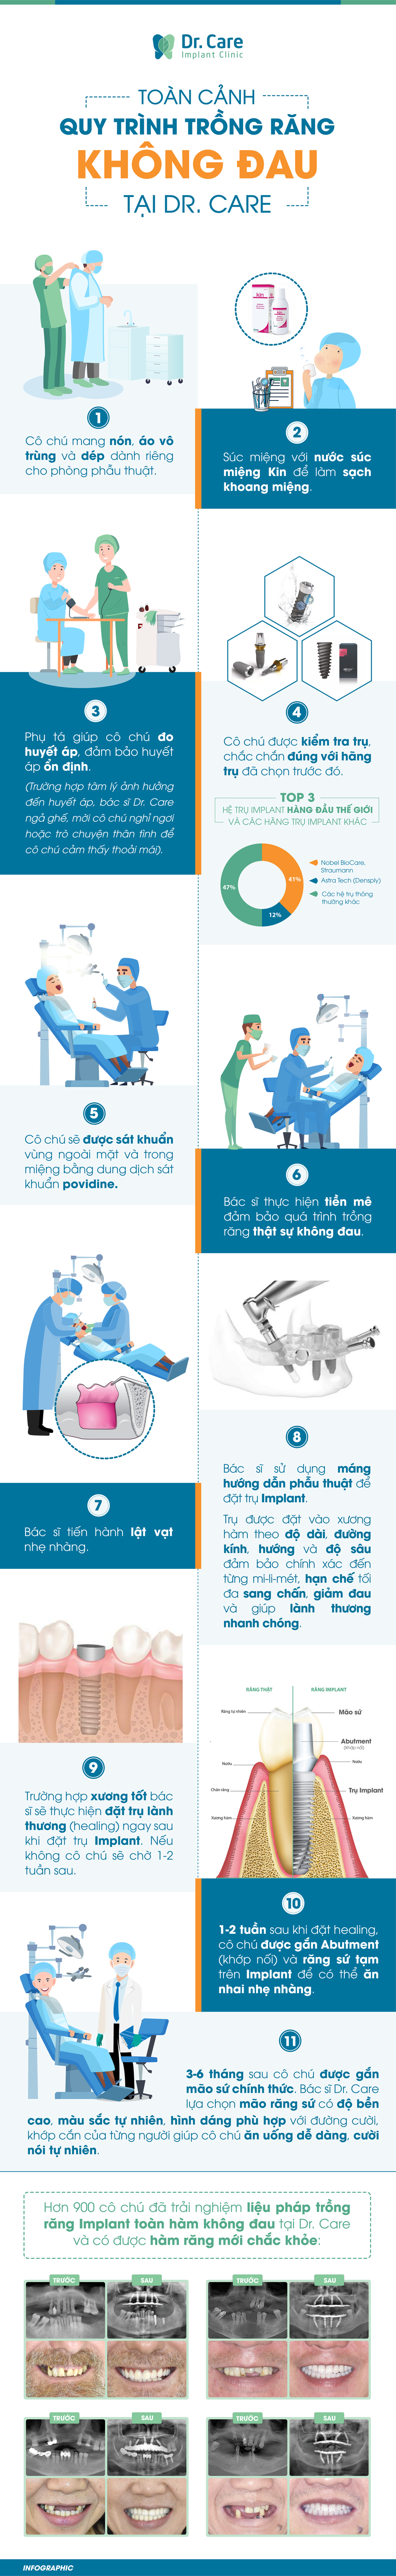 Toàn cảnh ca trồng răng Implant không đau tại nha khoa chuyên sâu - Ảnh 2.